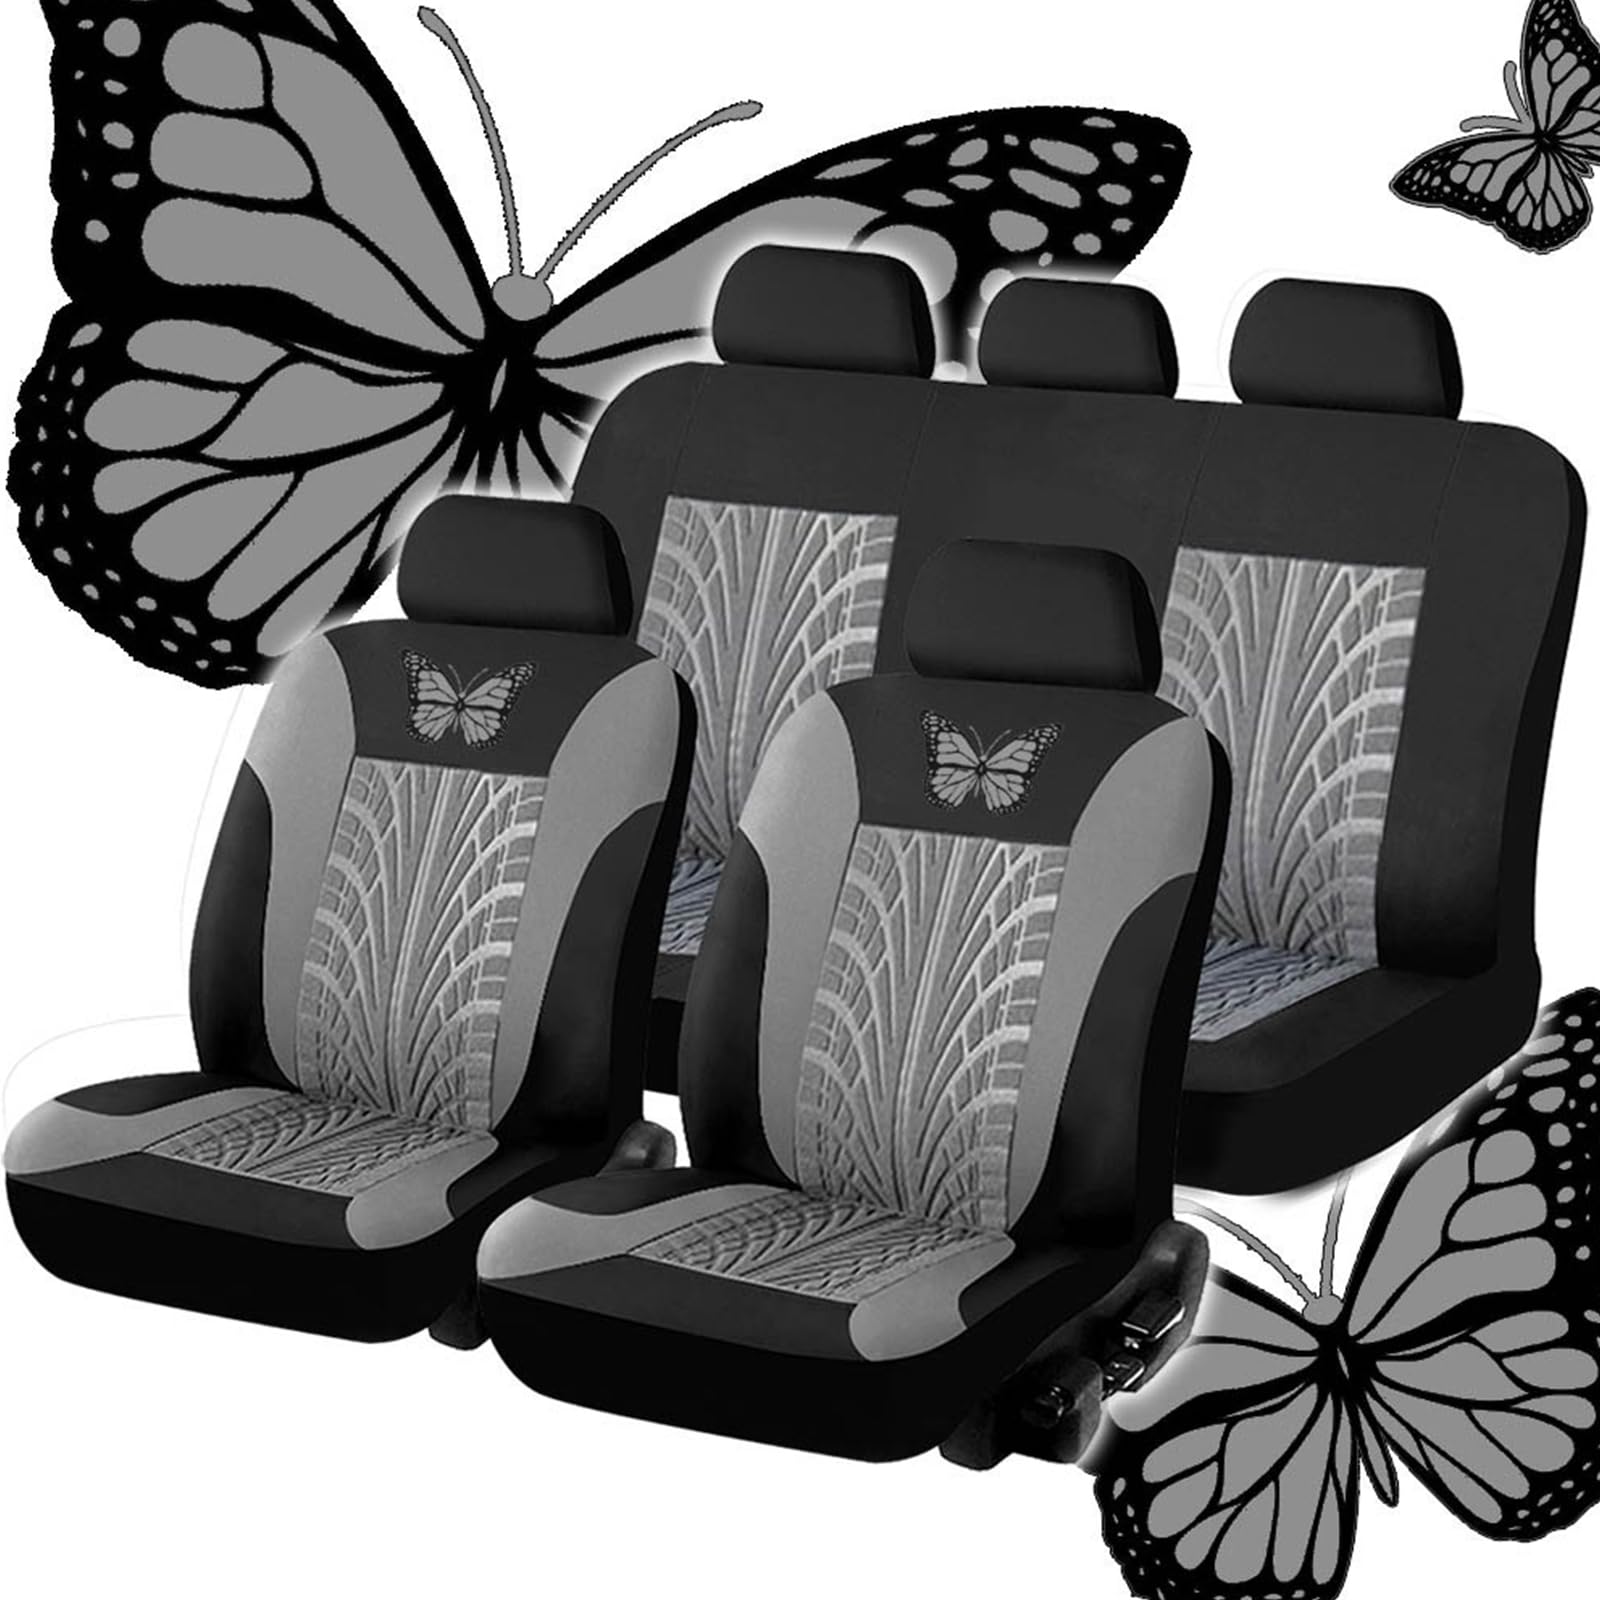 SNXLW 5 Sitzplätze Universal Auto Sitzbezüge Sets für Audi Q4 e-tron SUV 2021 2022 2023 Autositzbezug Vorne Hinten Schonbezüge Innenraum Zubehör,Grey von SNXLW